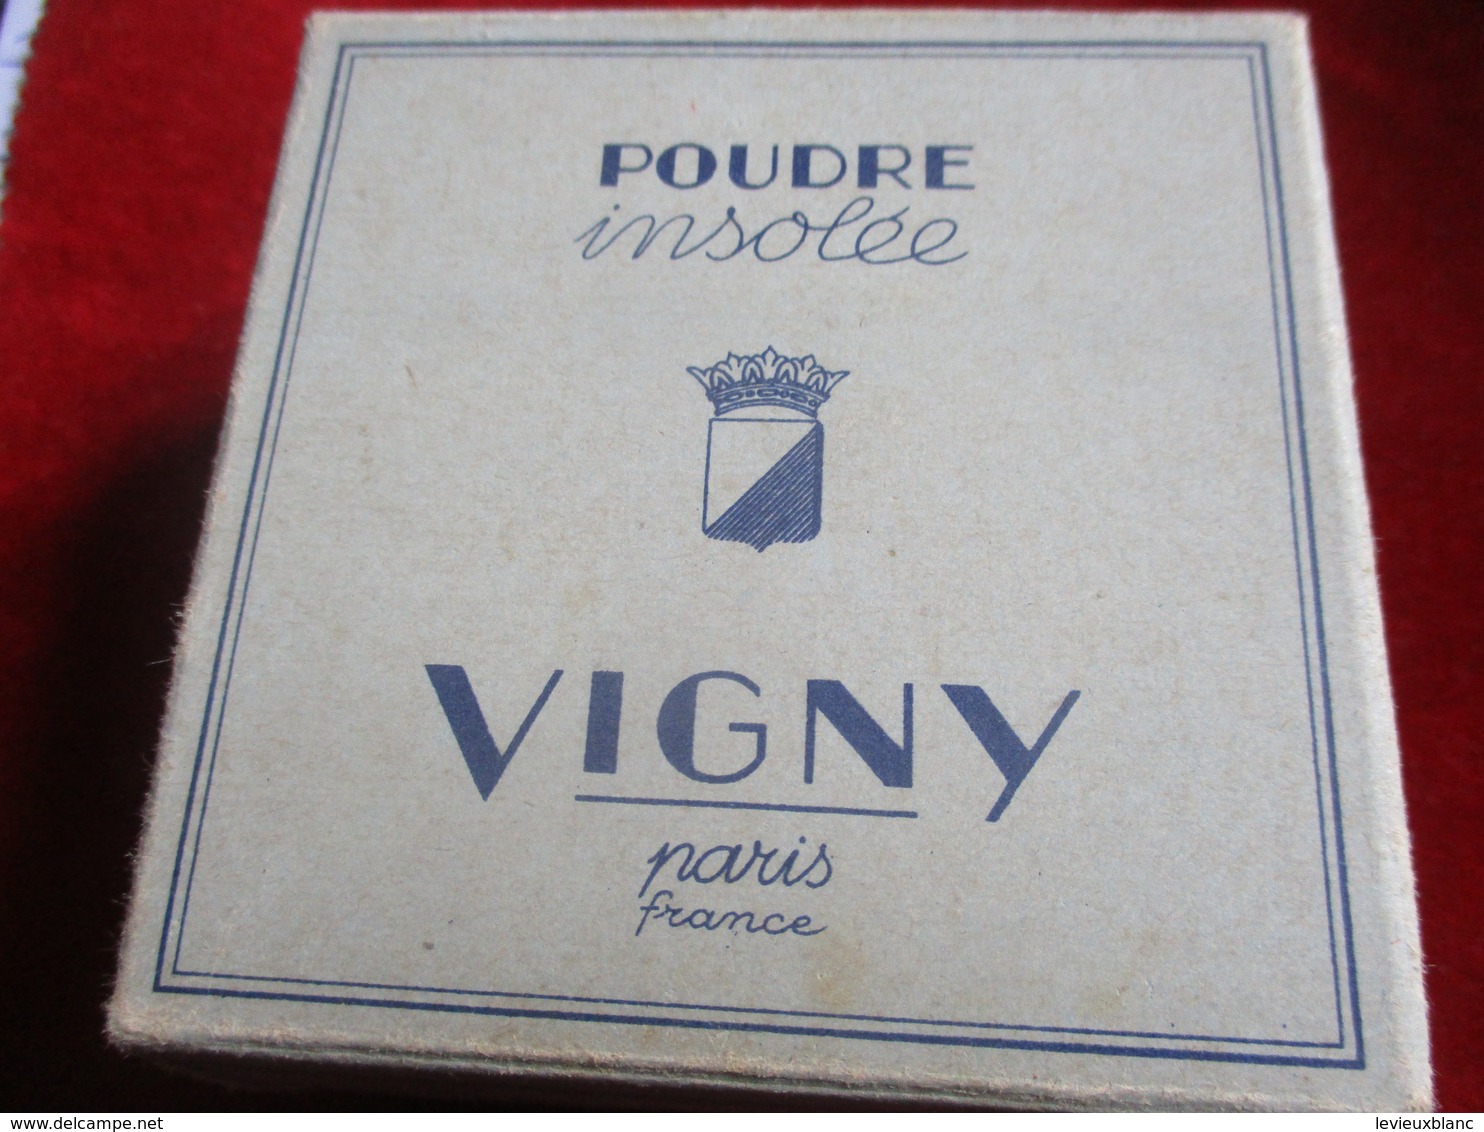 Maquillage/Boite de Poudre de riz/VIGNY/Paris / Poudre Insolée/Parfum heure intime/Pêche/Vers 1930-50       PARF192